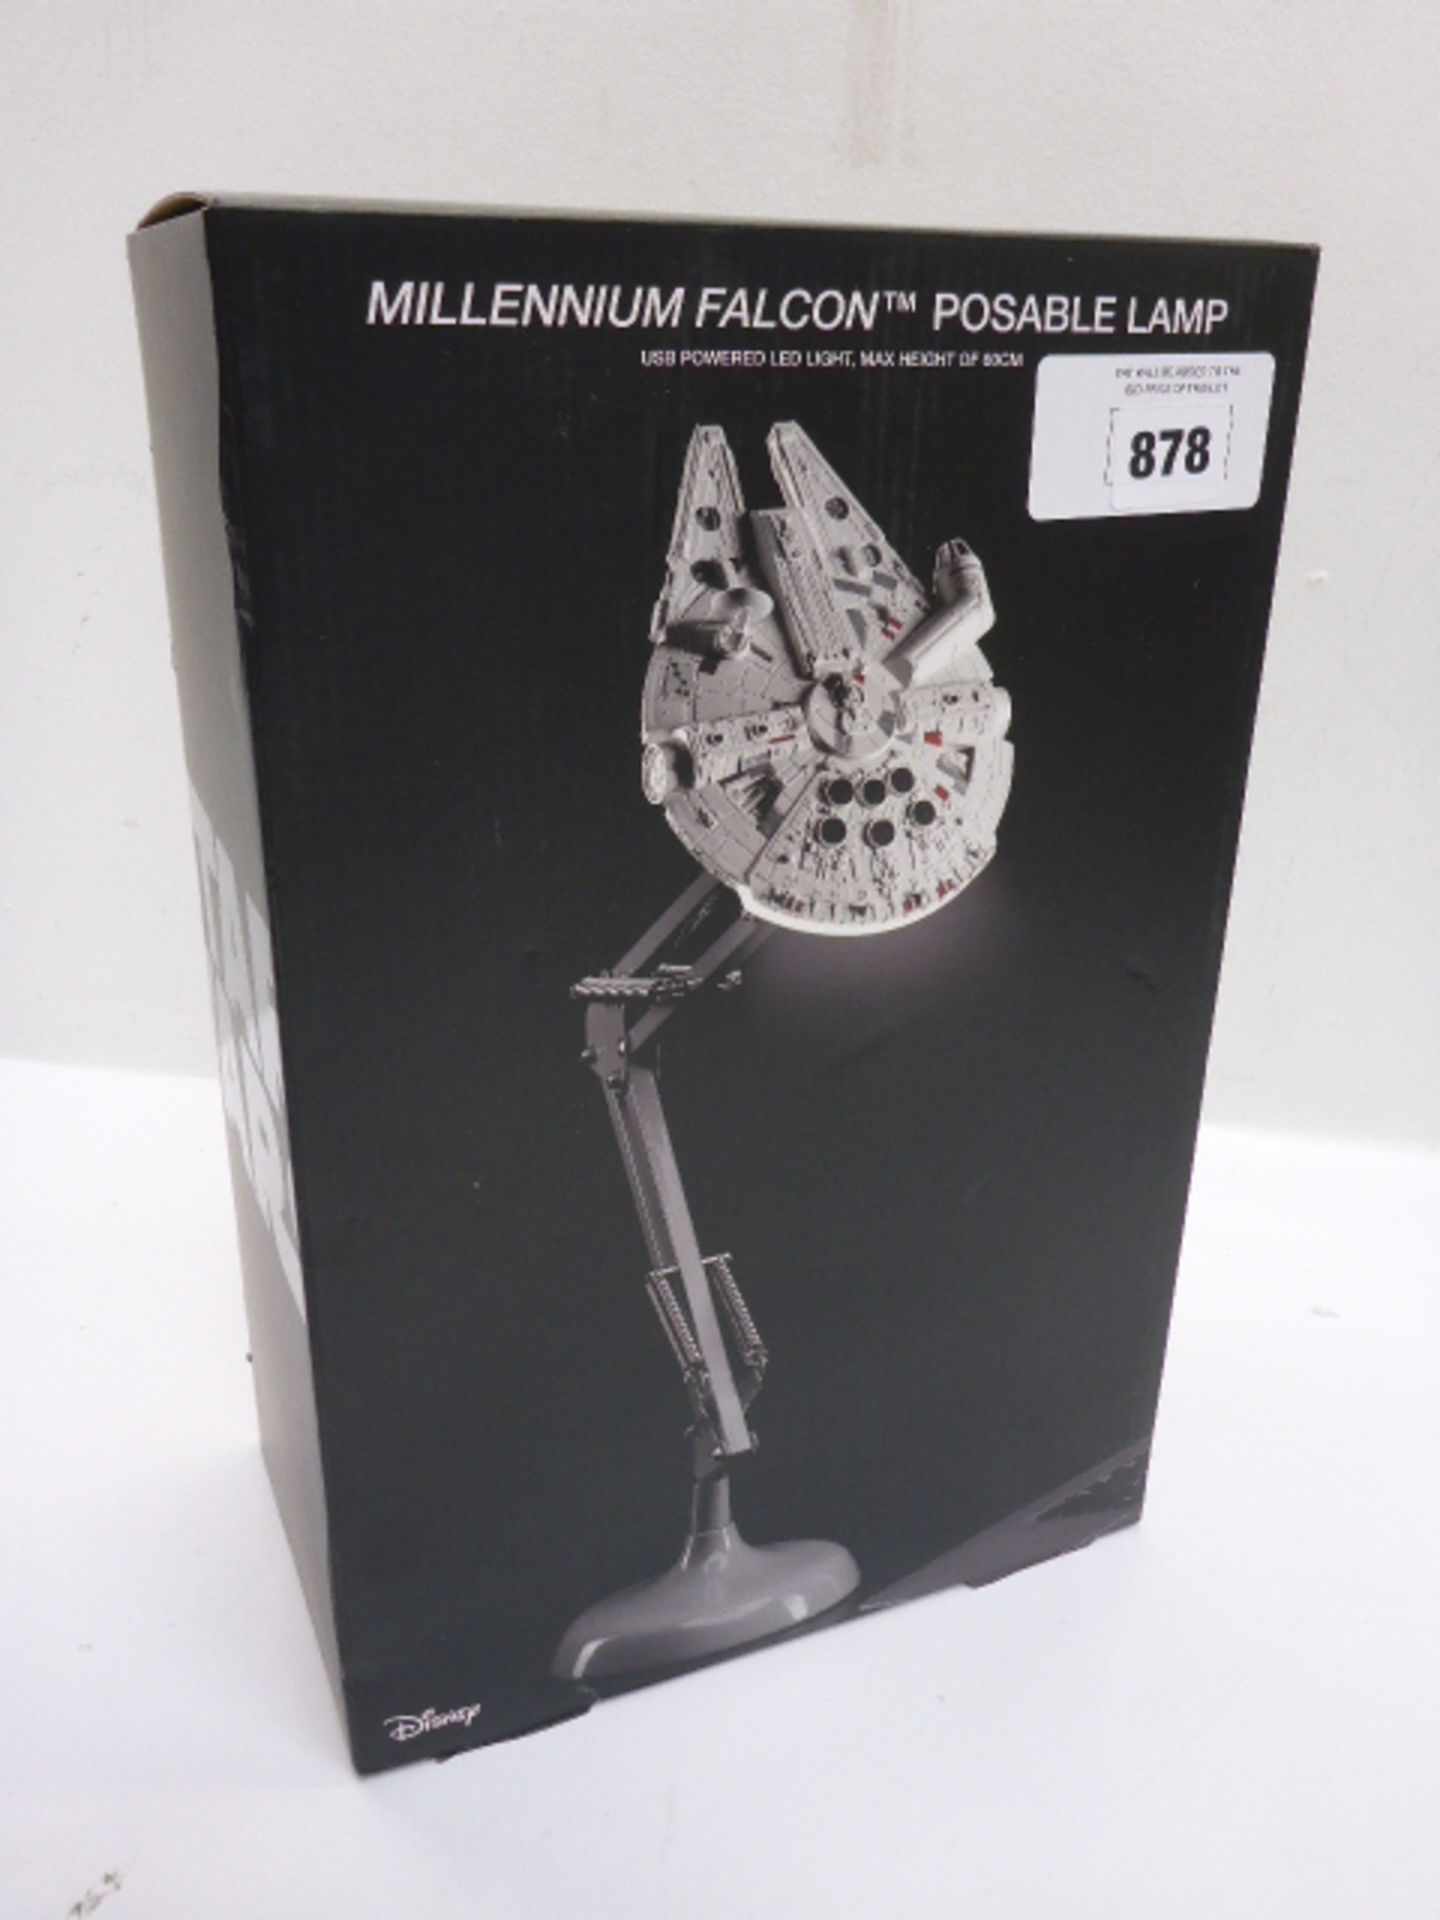 Millennium Falcon posable lamp